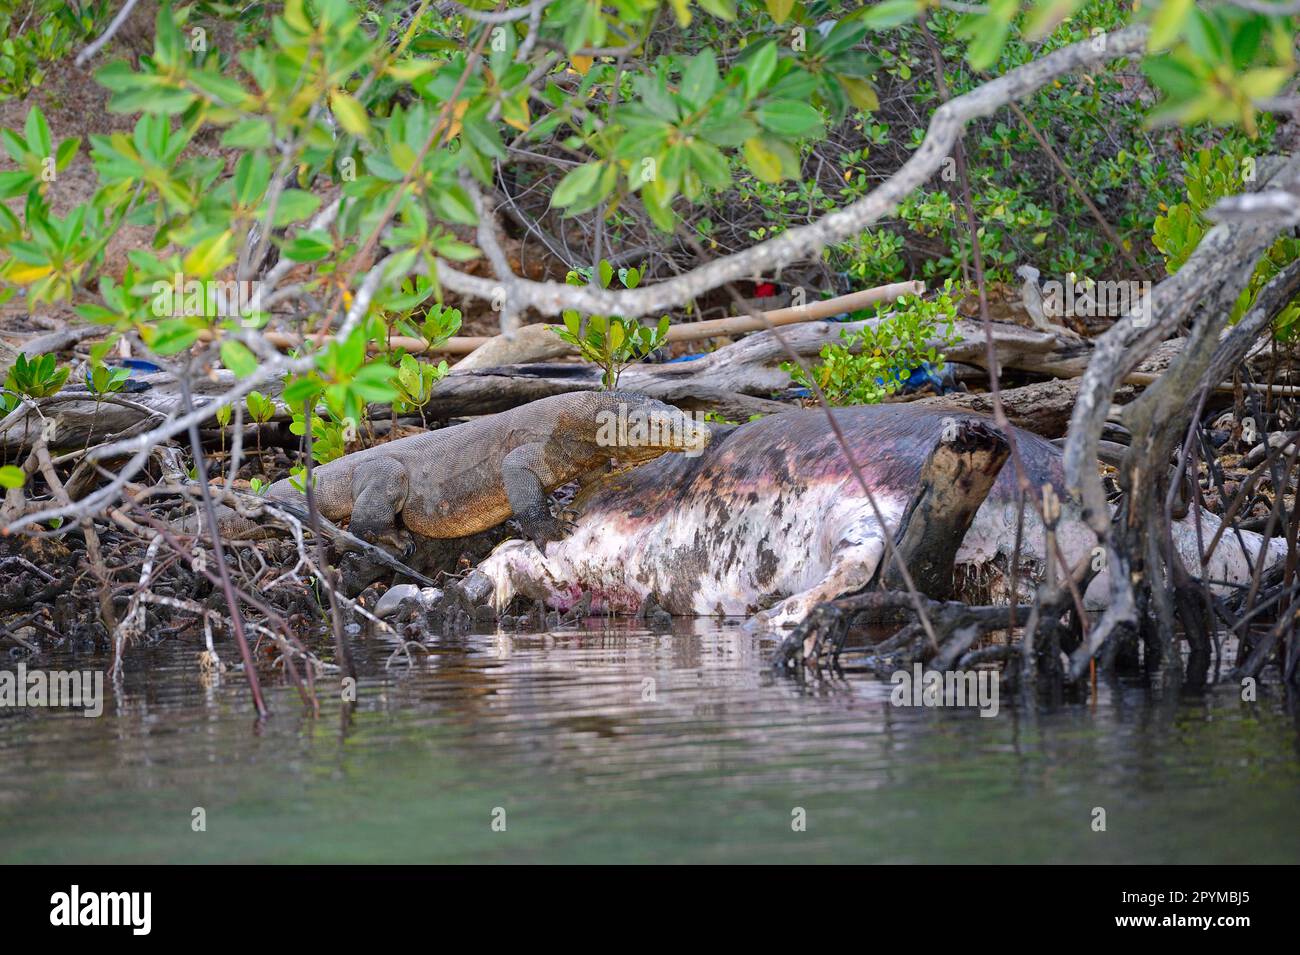 Komodo dragon (Varanus komodoensis), on buffalo carcass in mangrove area, Rinca Island, Indonesia Stock Photo